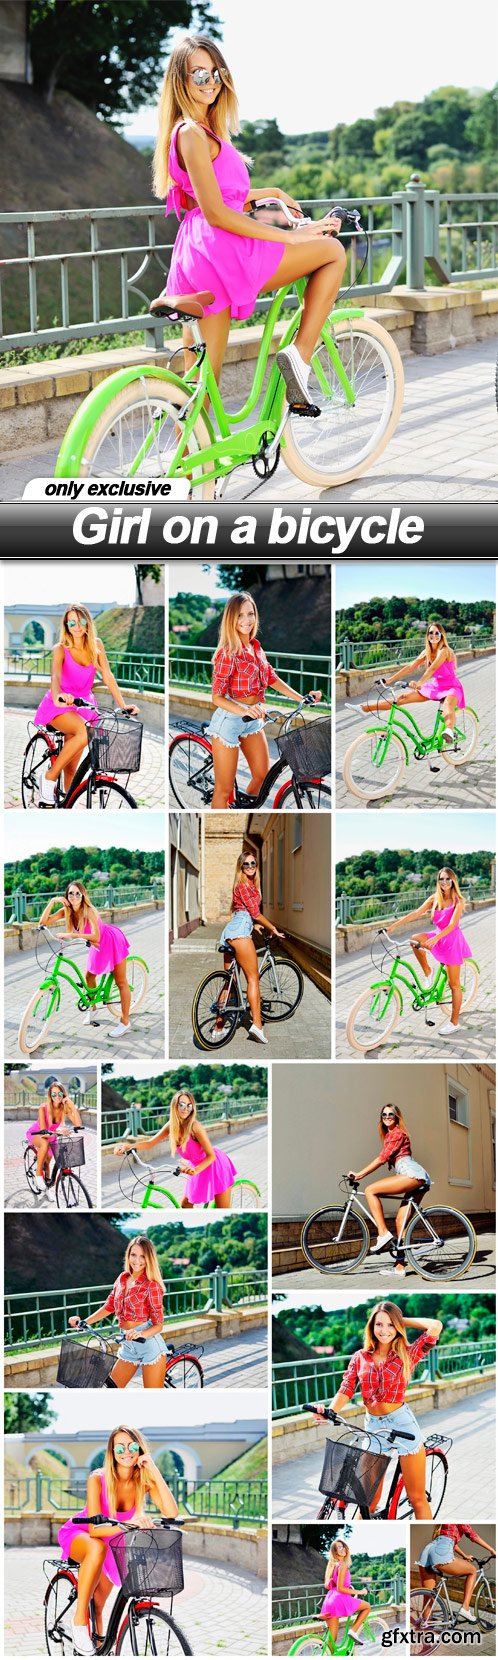 Girl on a bicycle - 15 UHQ JPEG